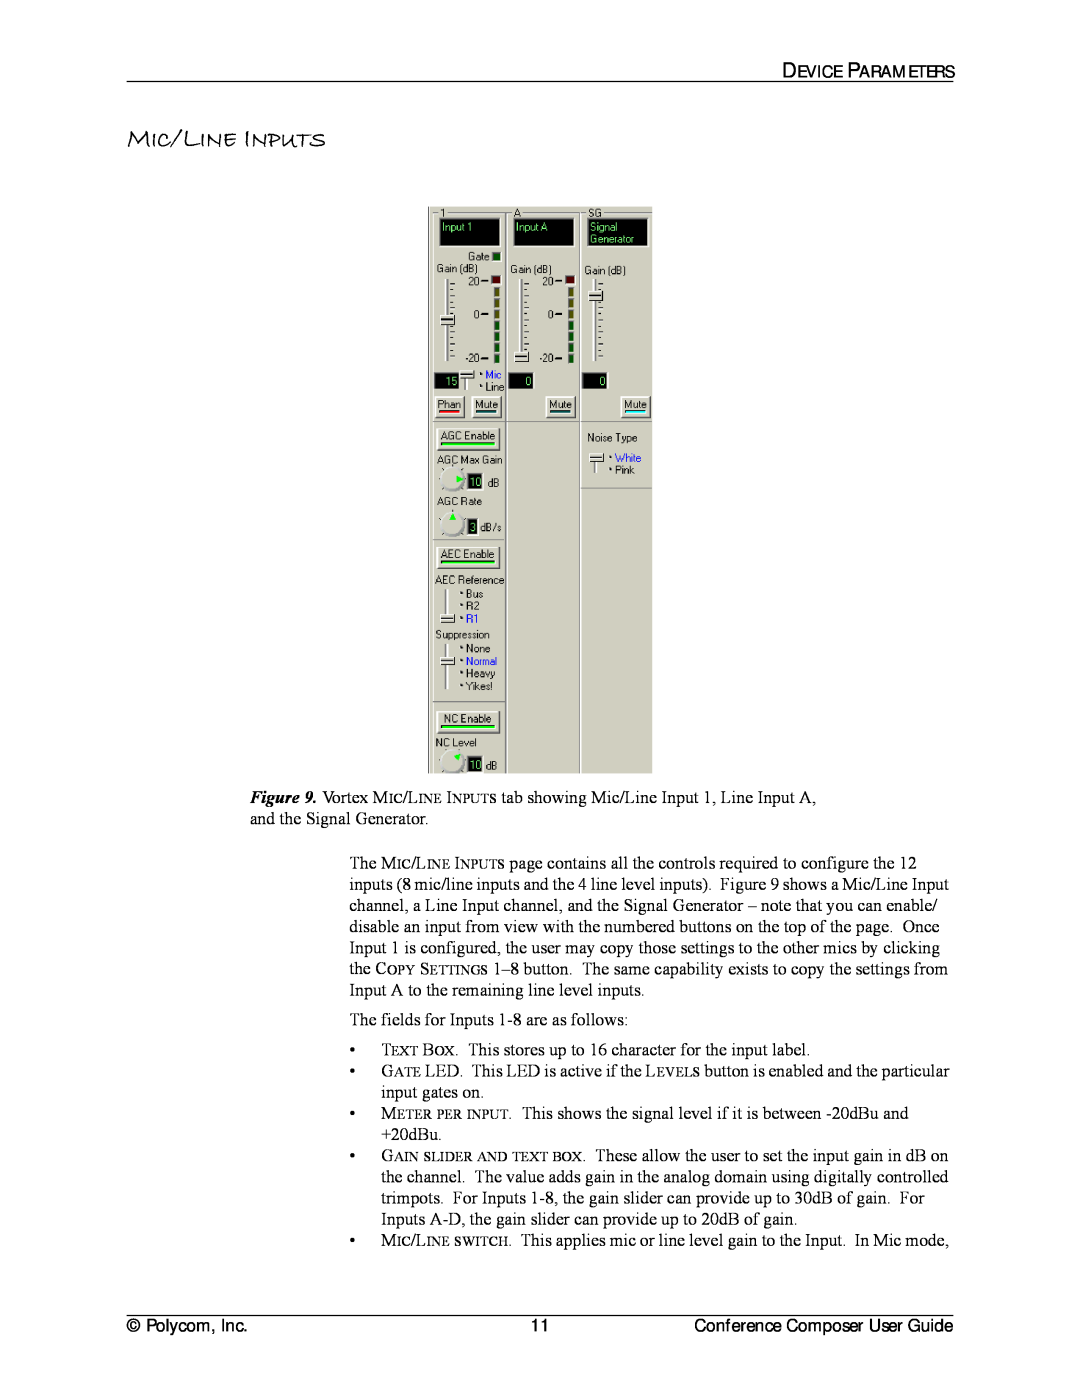 Polycom CCUG-0100-01 manual Mic/Line Inputs 